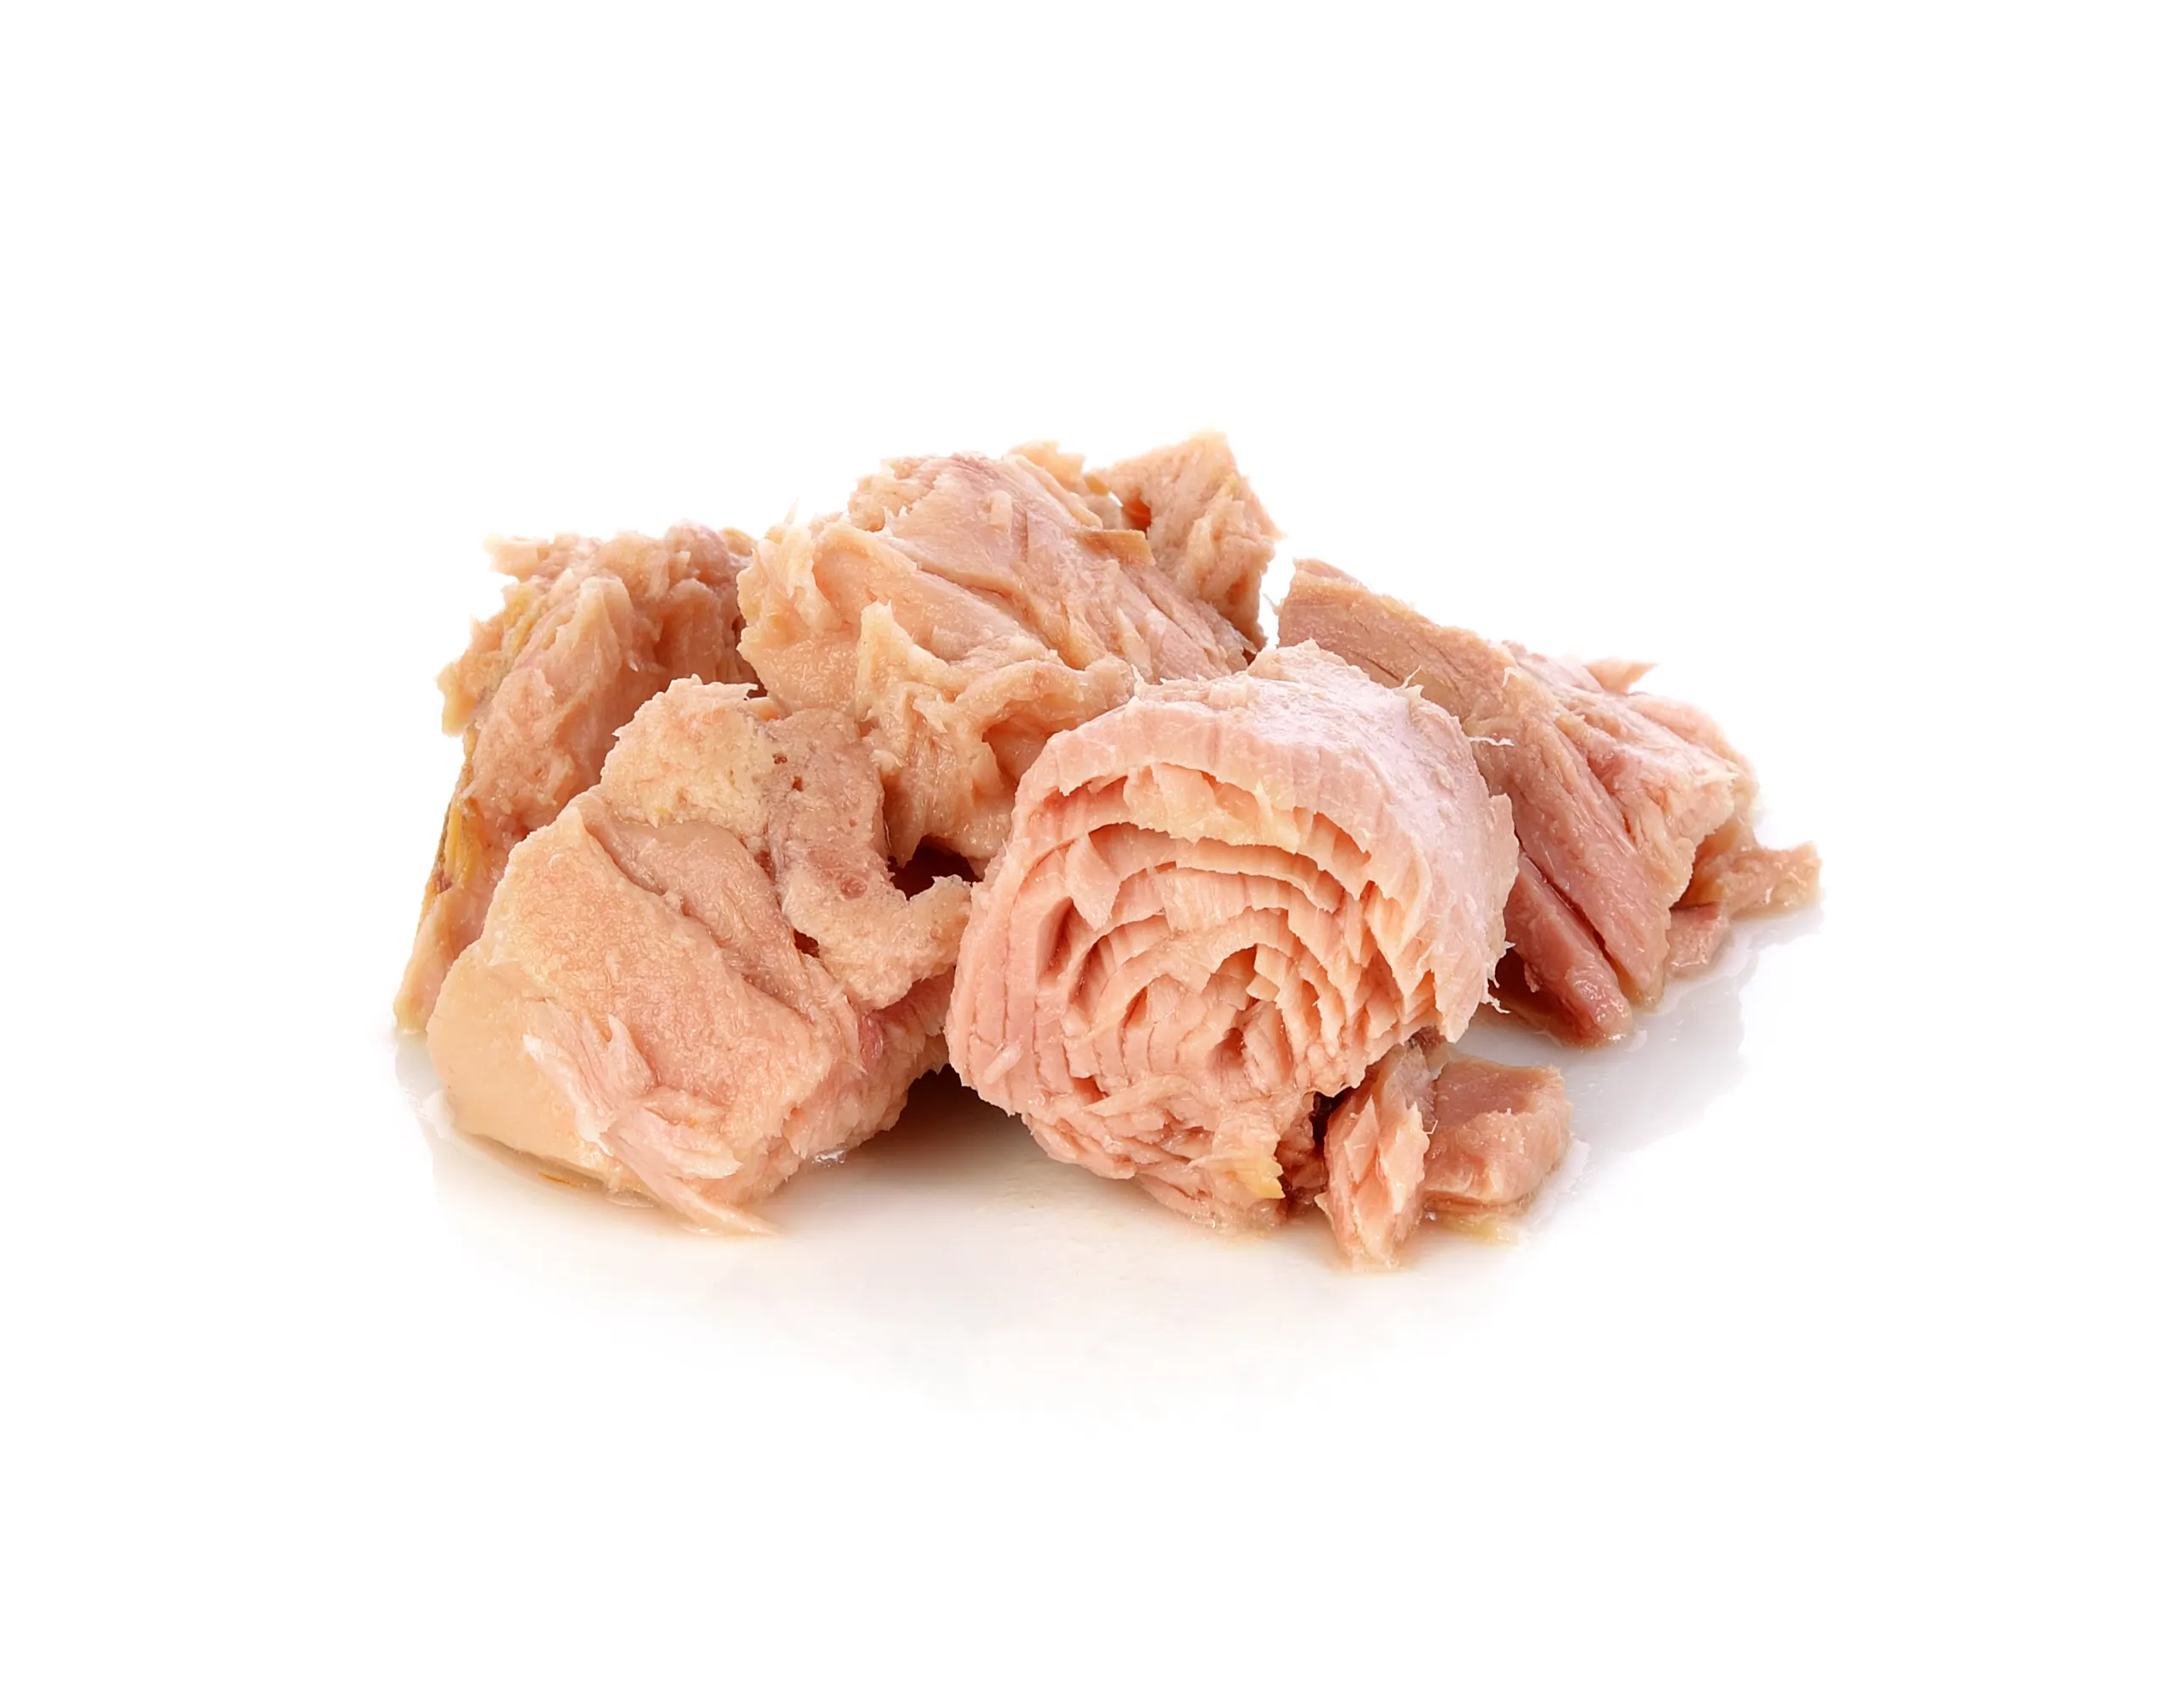 Консервированное легкое мясо тунца chunk в соевом масле г * 48 консервных банок легко открыть. От Mareewa Export Co.,ltd. Таиланд